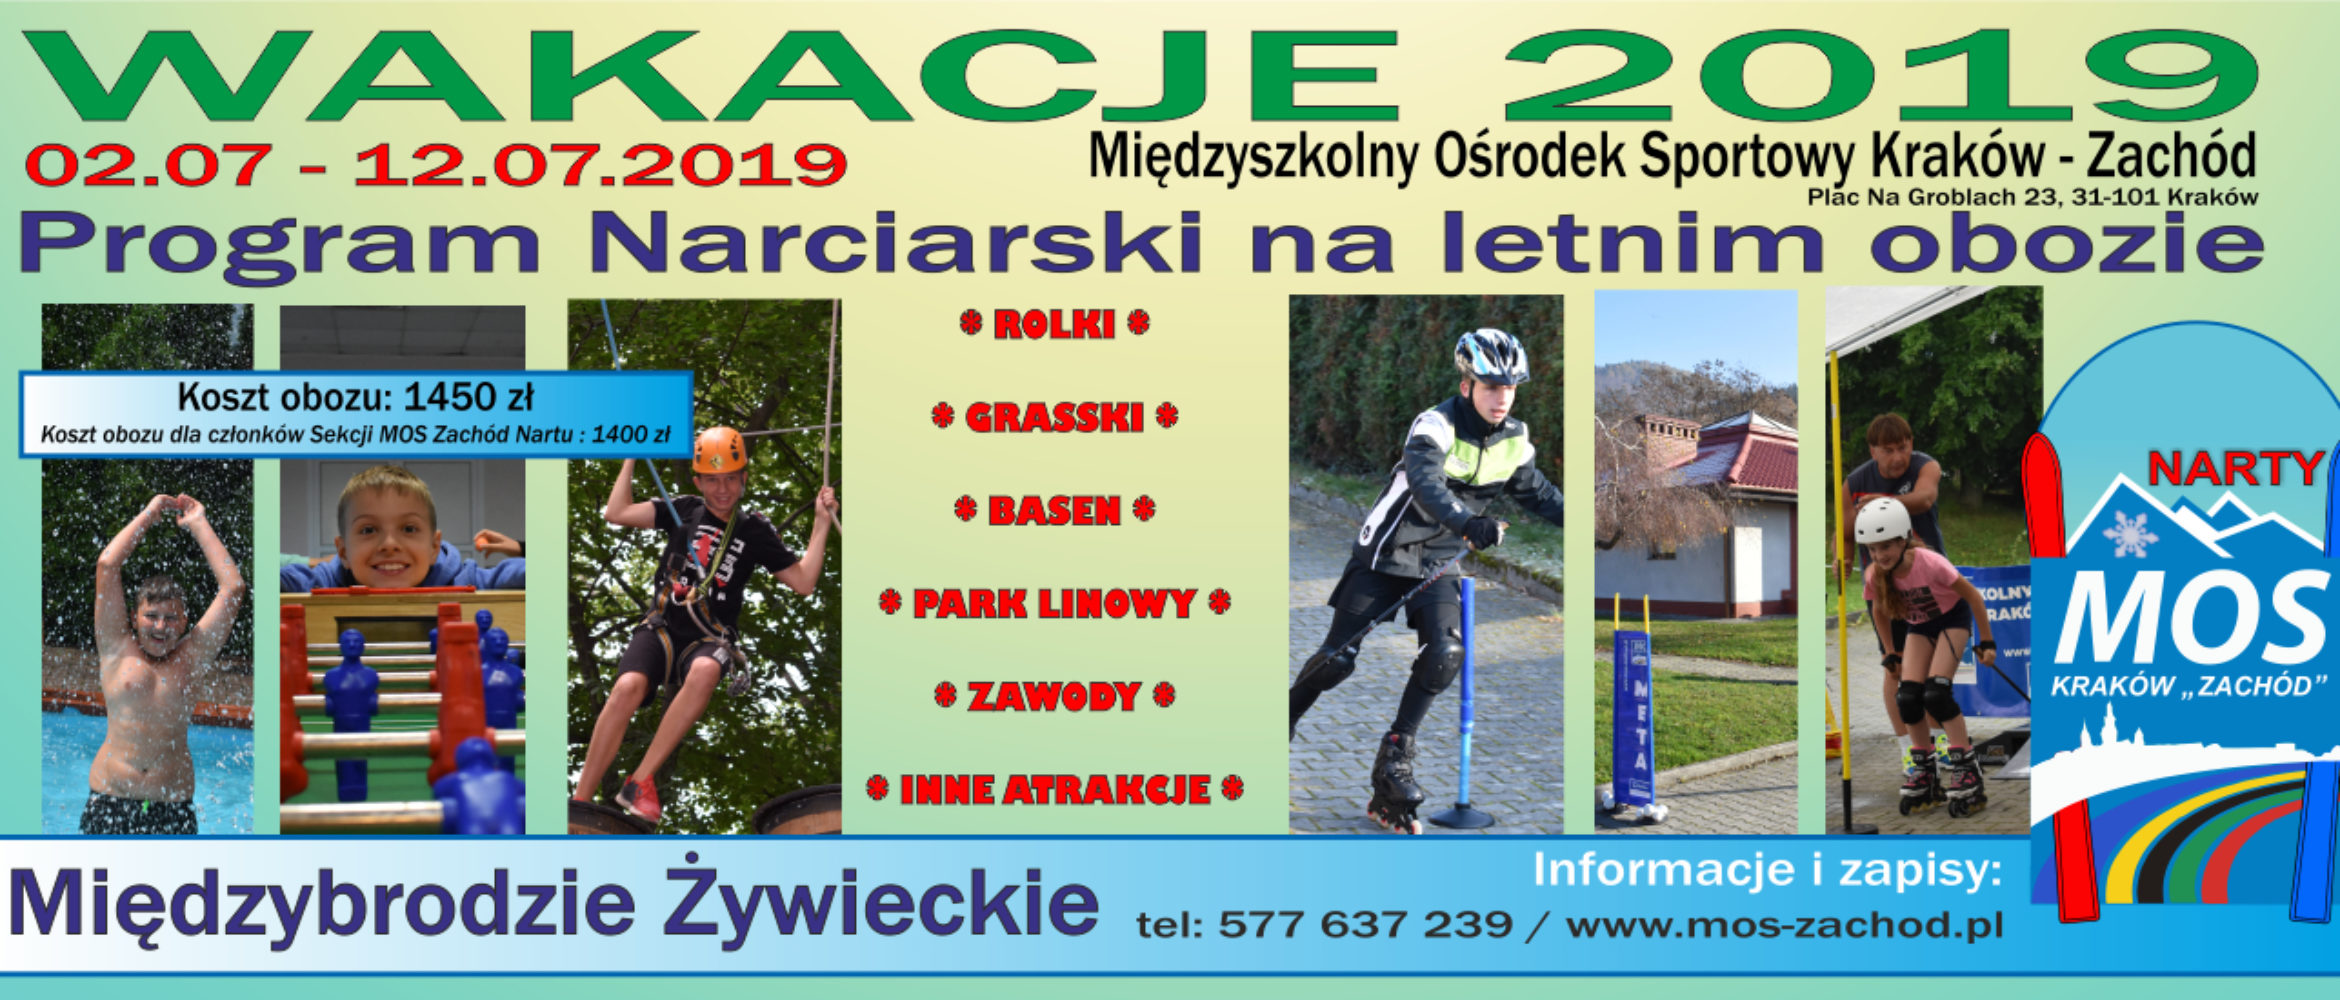 WAKACJE 2019 – Obóz Letni o profilu narciarskim 02.07-12.07.2019 Międzybrodzie Żywieckie